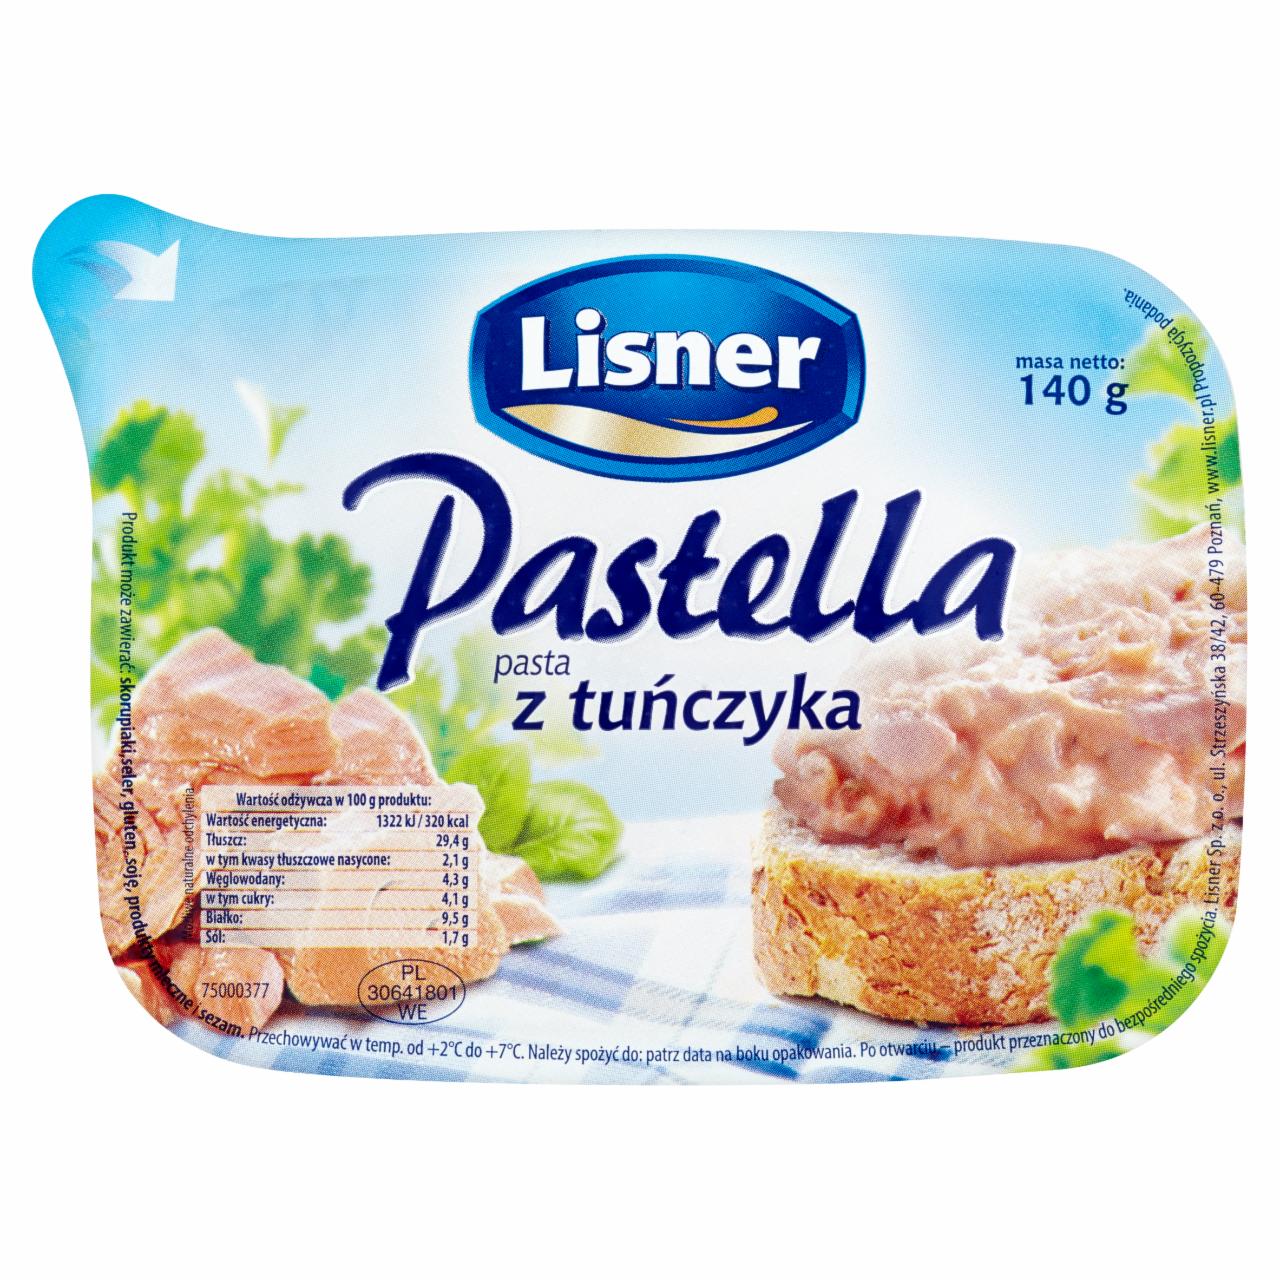 Zdjęcia - Lisner Pastella Pasta z tuńczyka 140 g